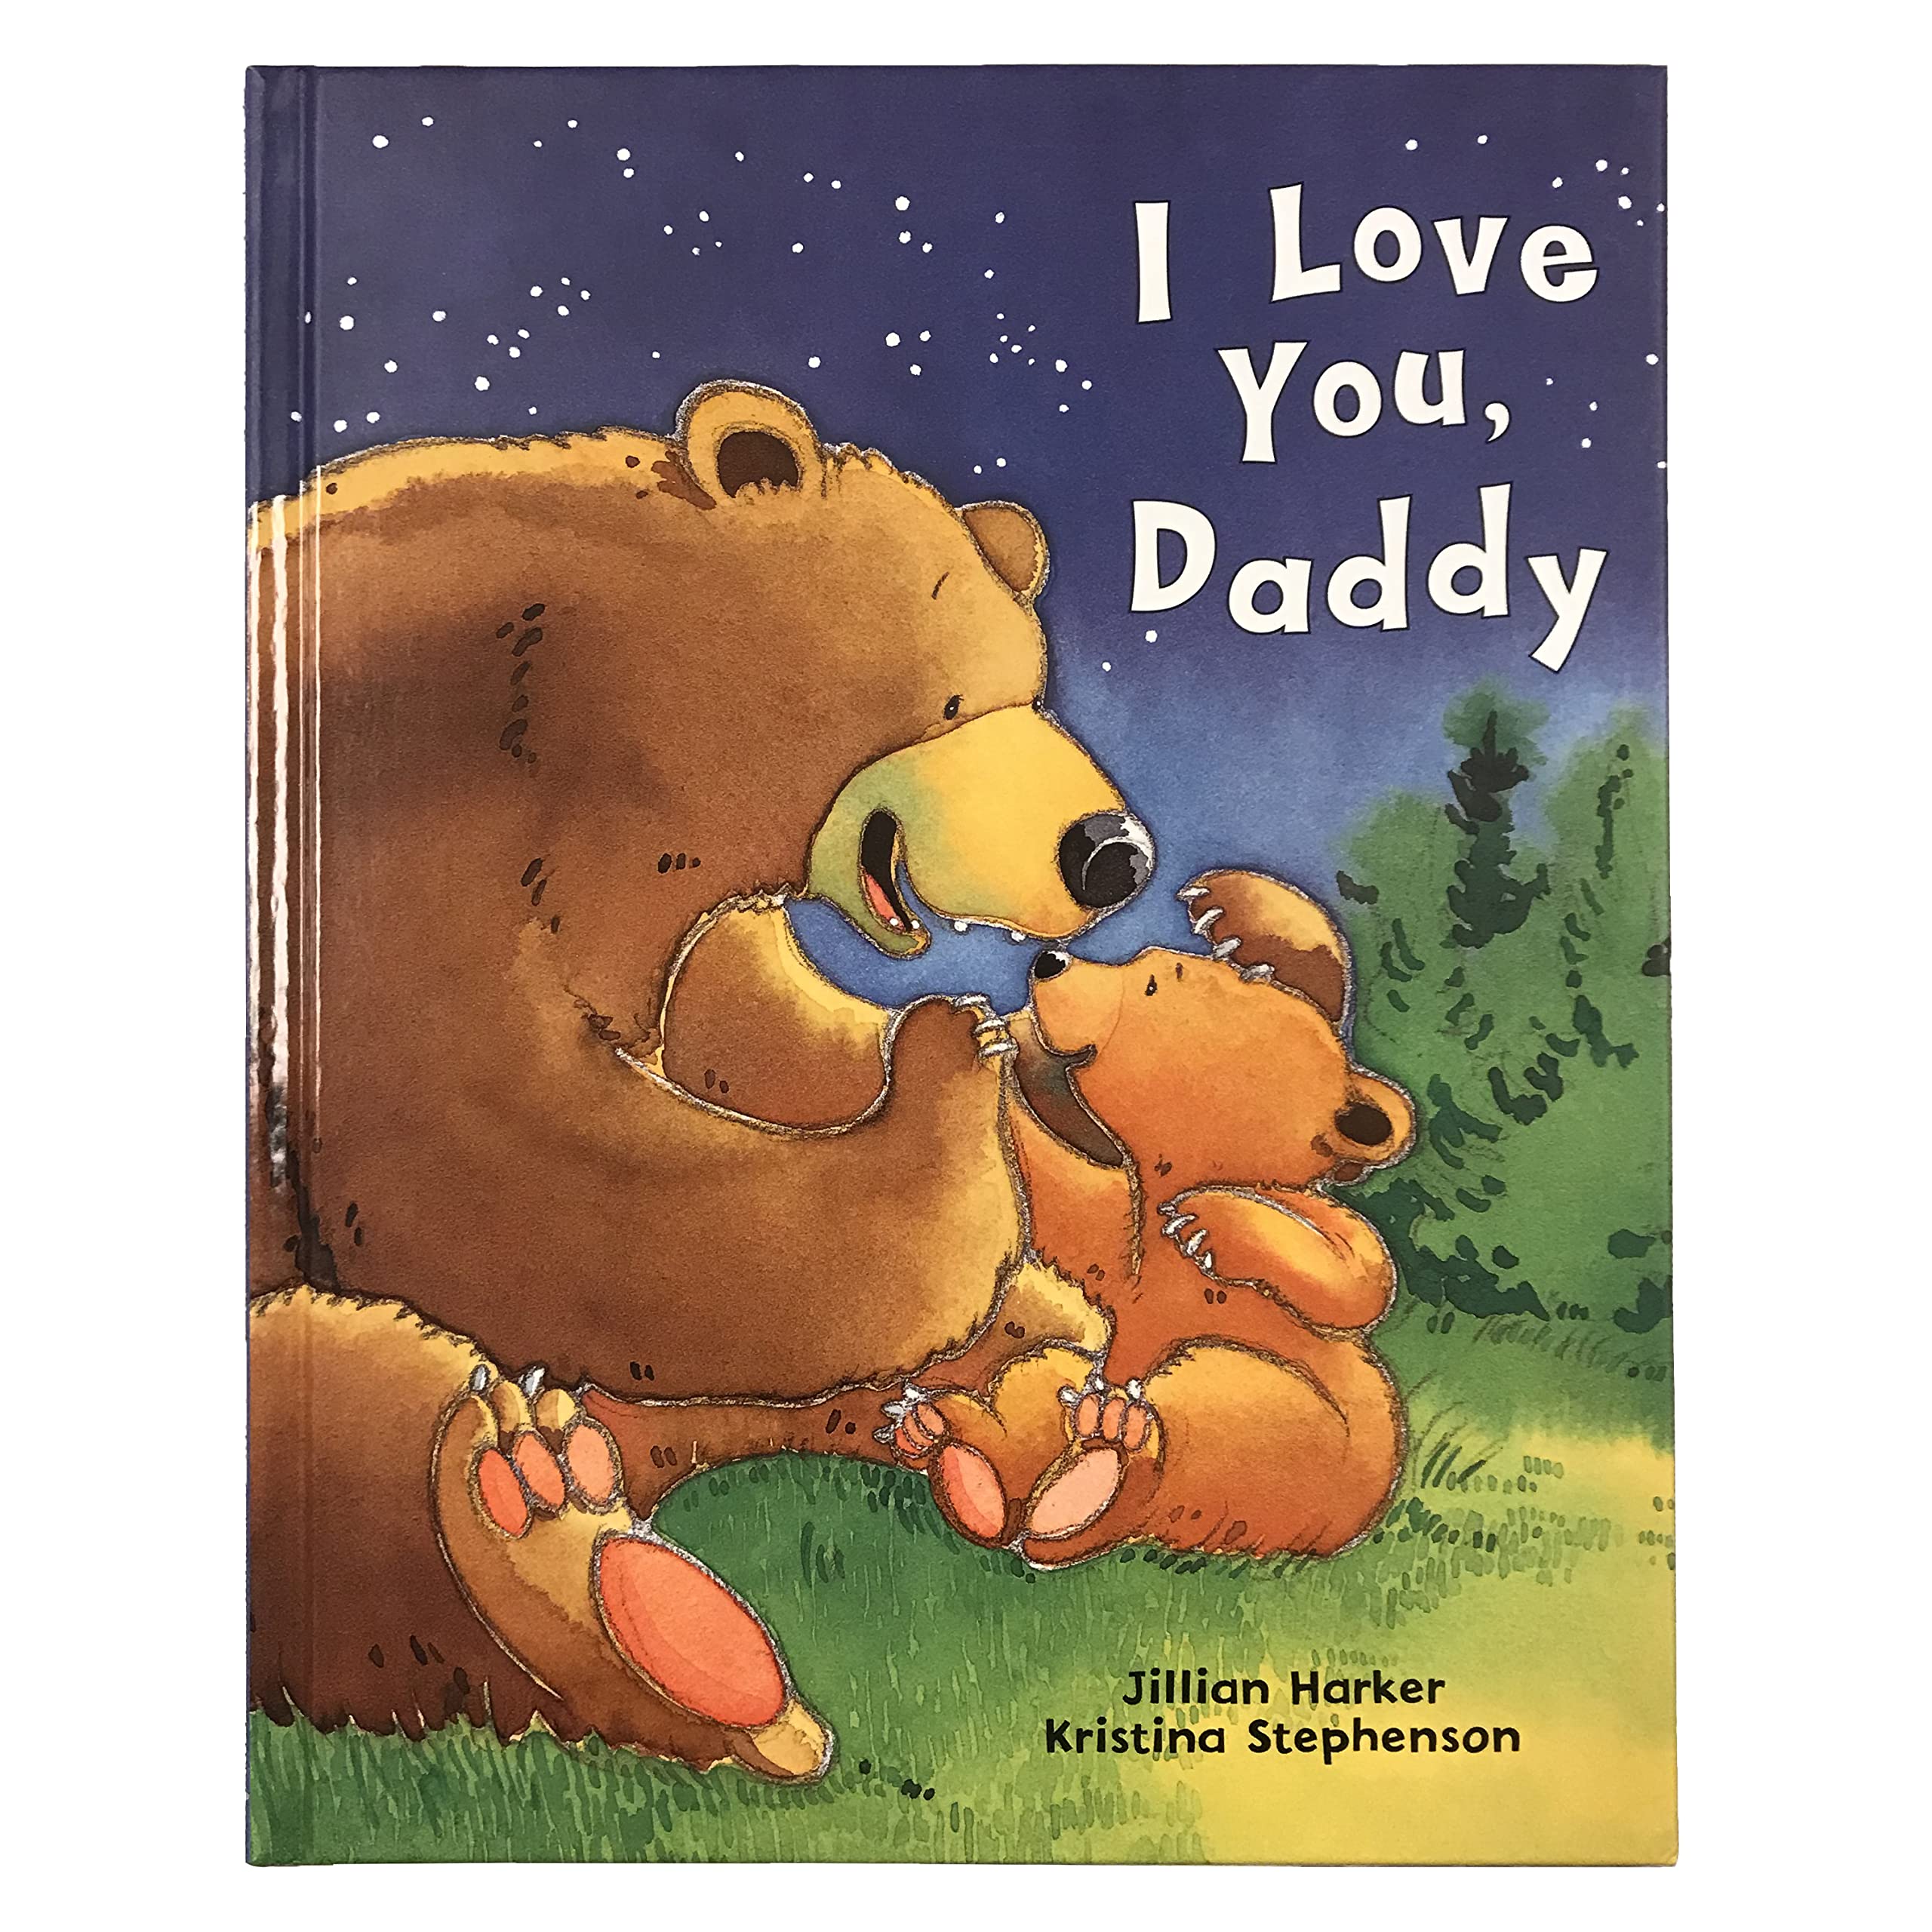 I Love You, Daddy by Harker, Jillian